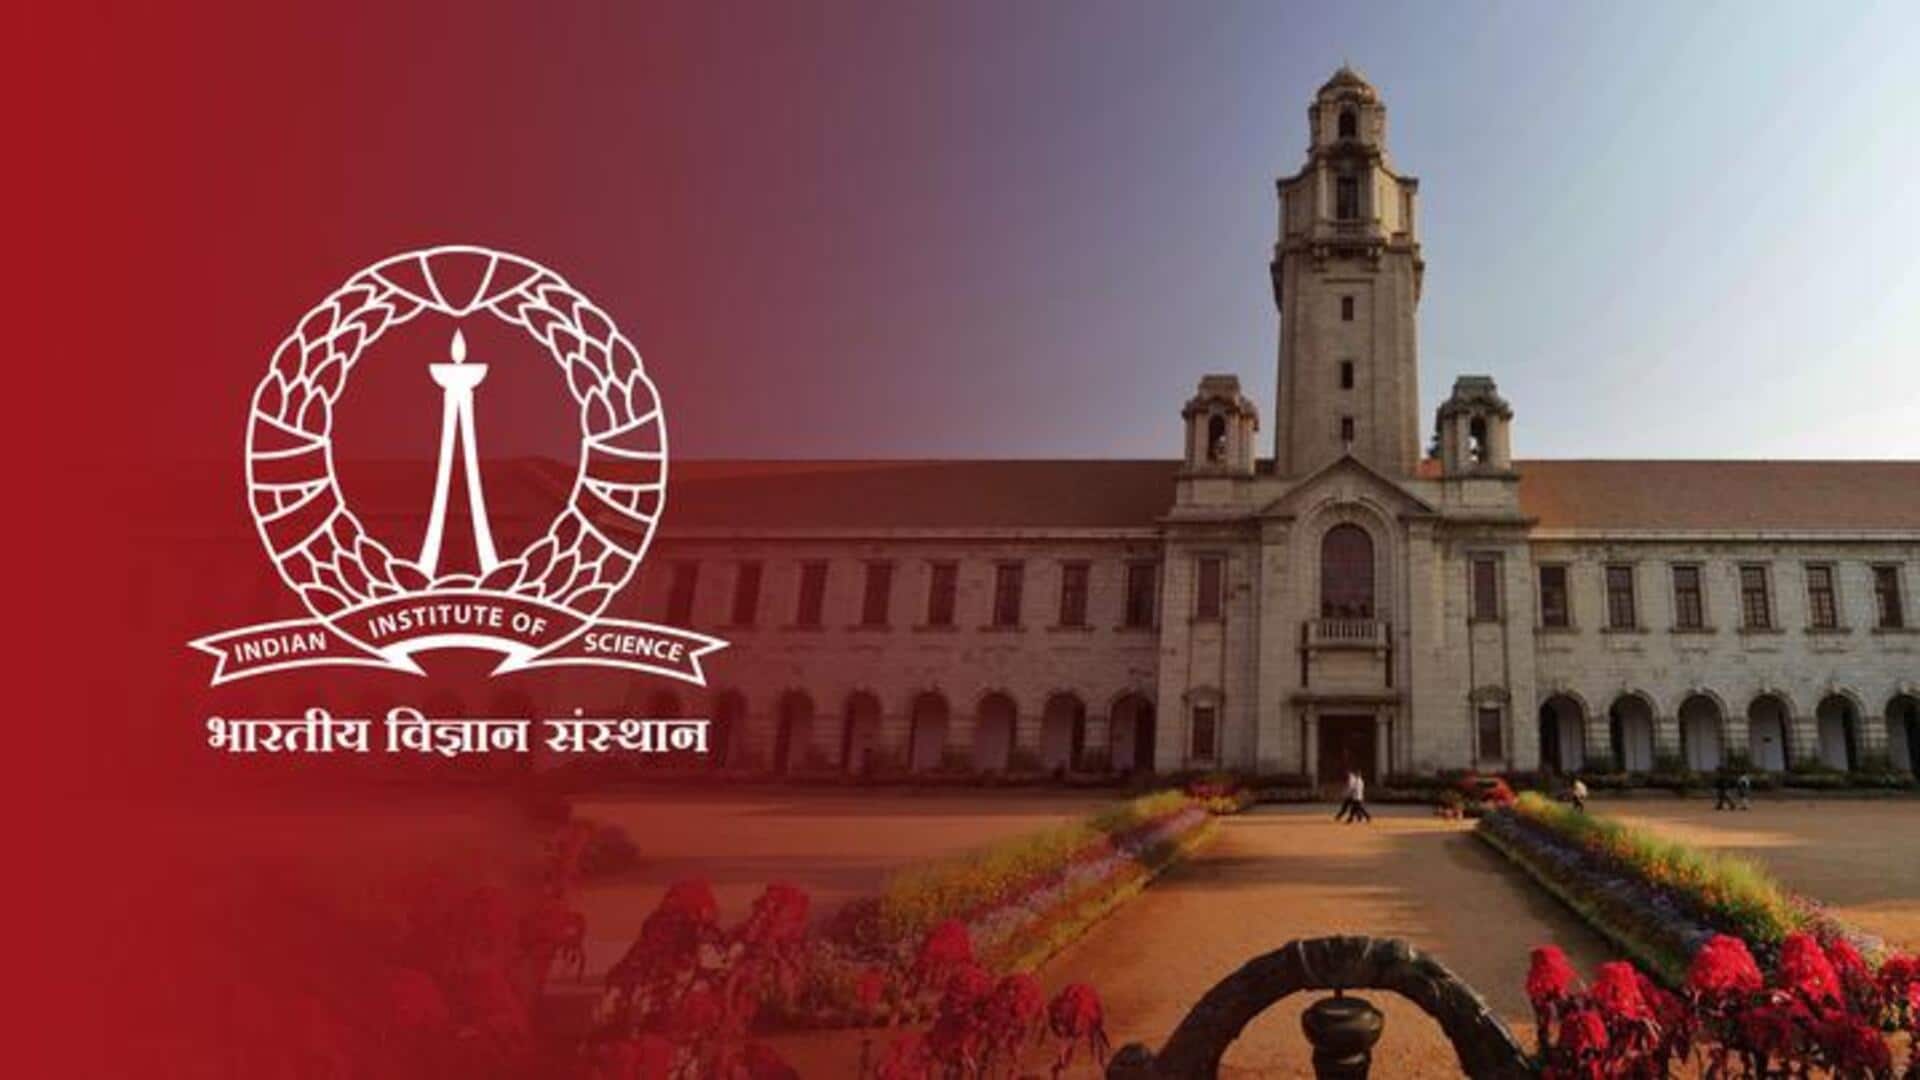 विषय आधारित वर्ल्ड यूनिवर्सिटी रैंकिंग में IISc बेंगलुरु बना सर्वश्रेष्ठ भारतीय विश्वविद्यालय